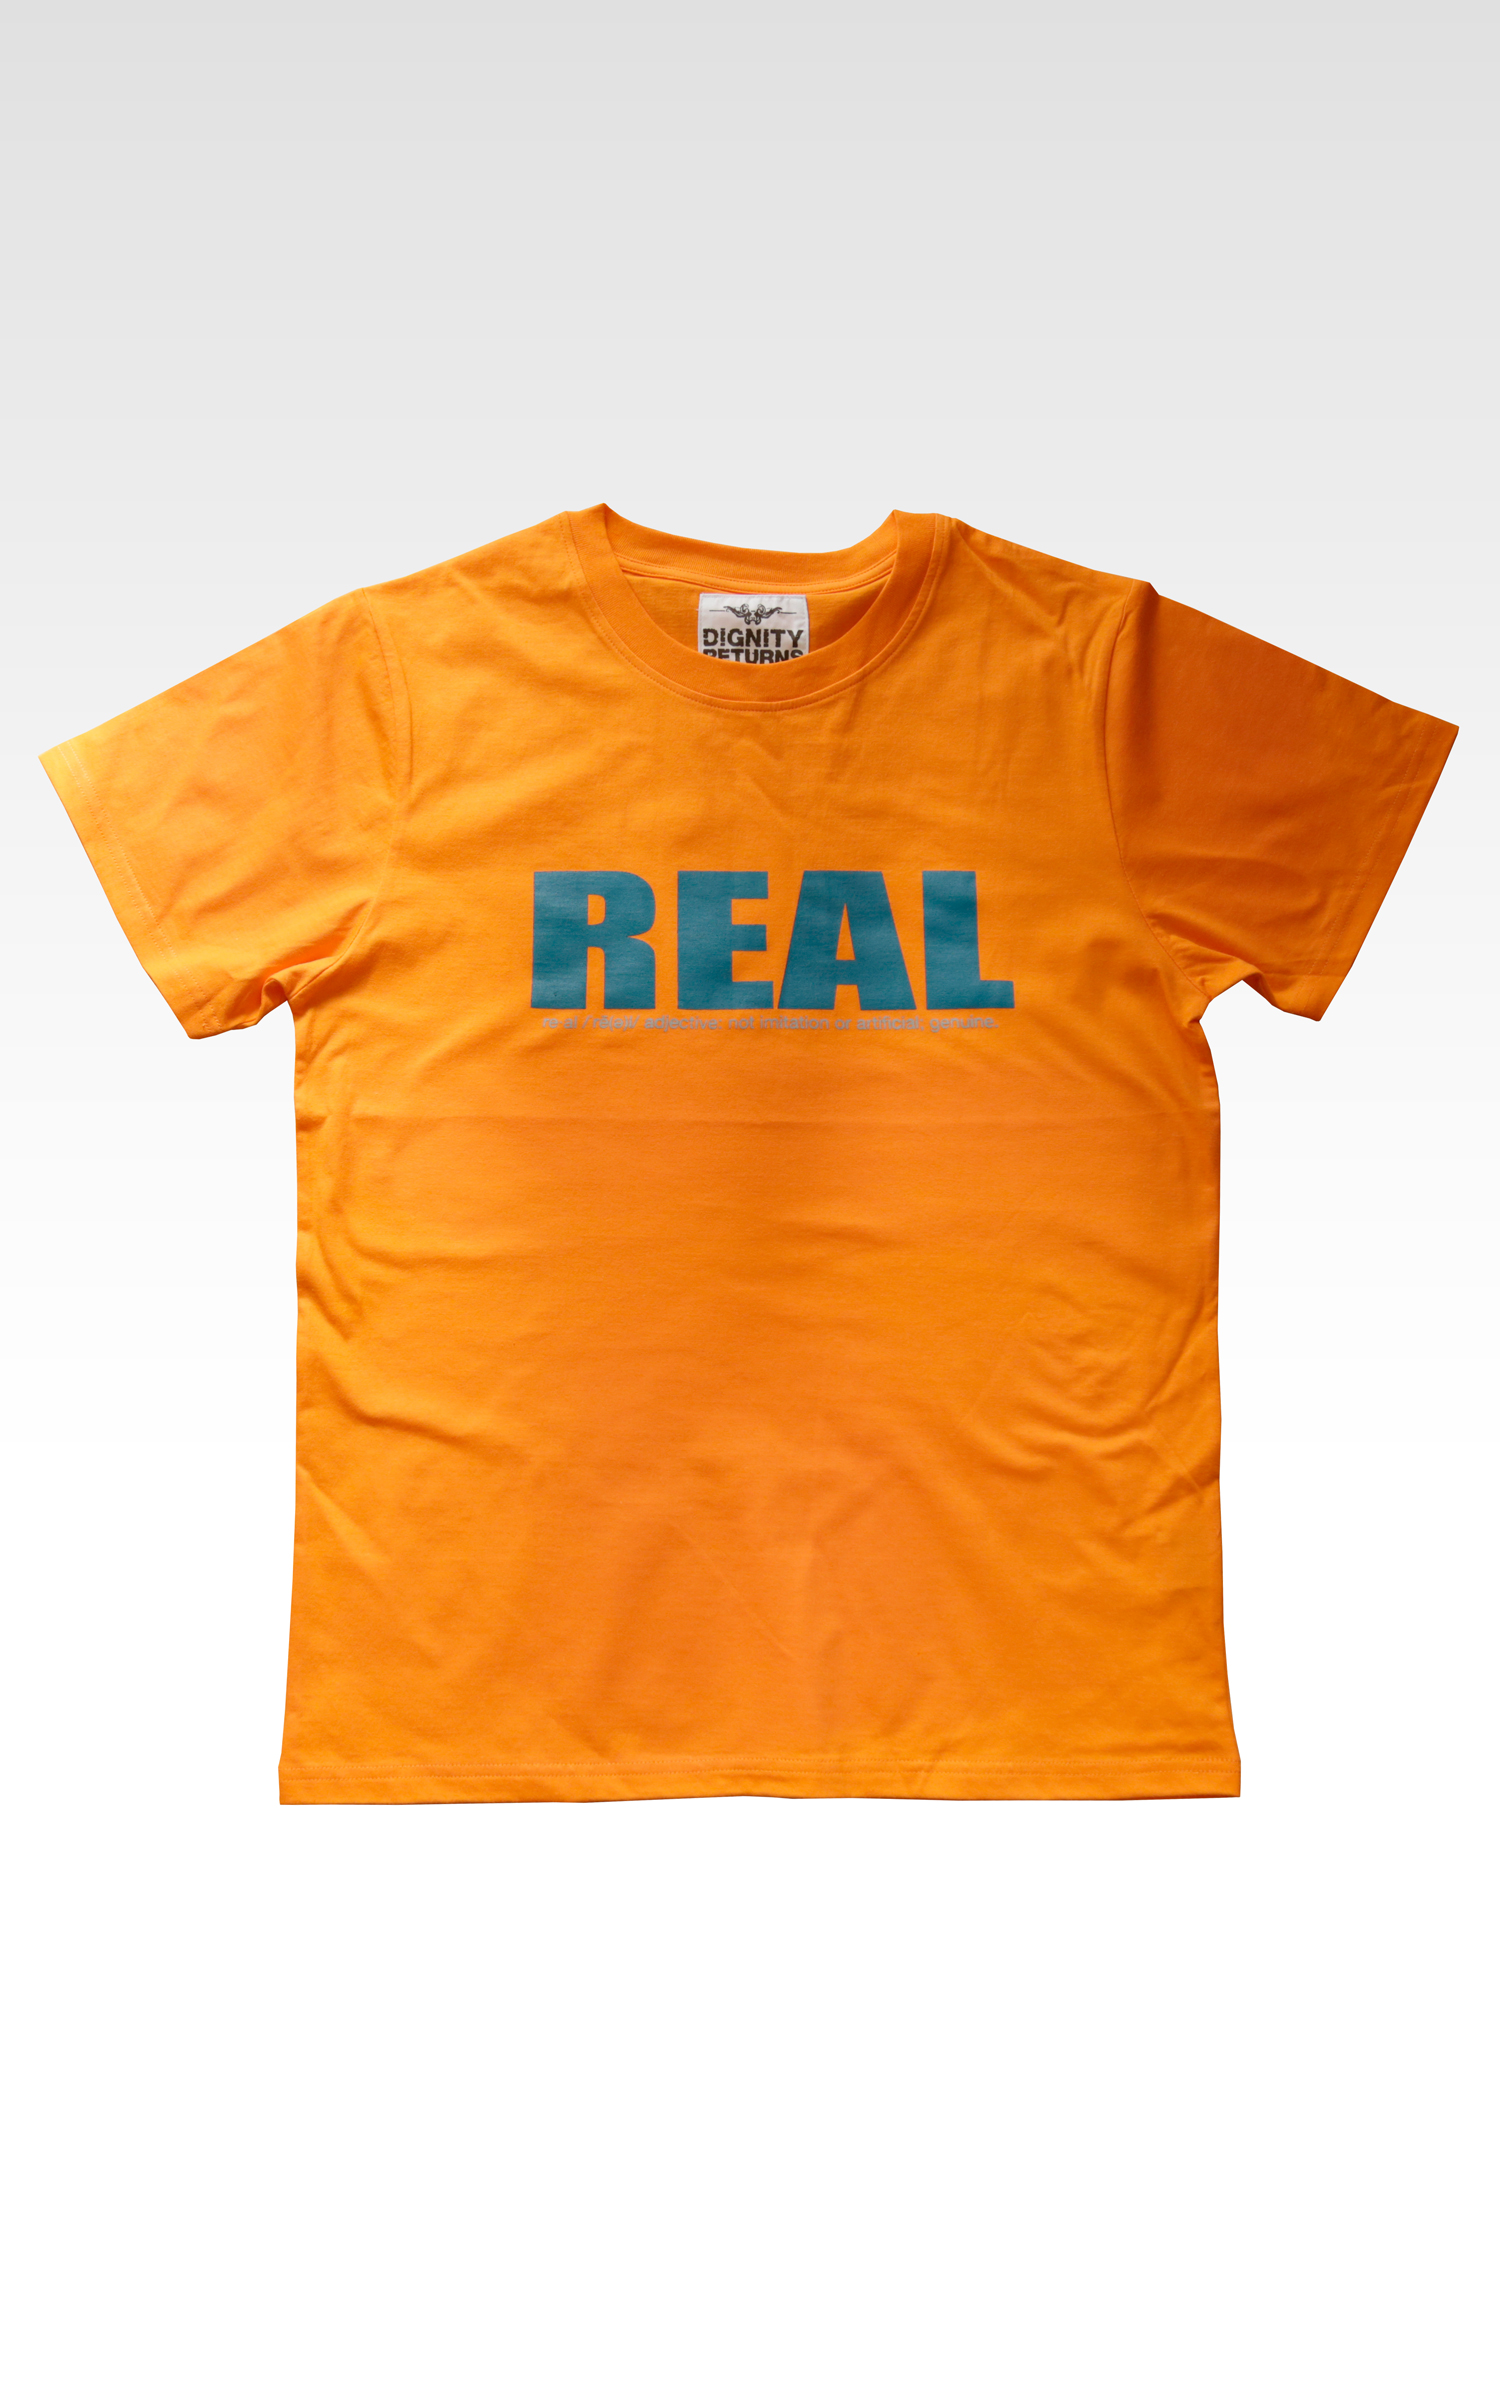 REAL – Orange Popsicle Favorite Short-sleeve crew tee